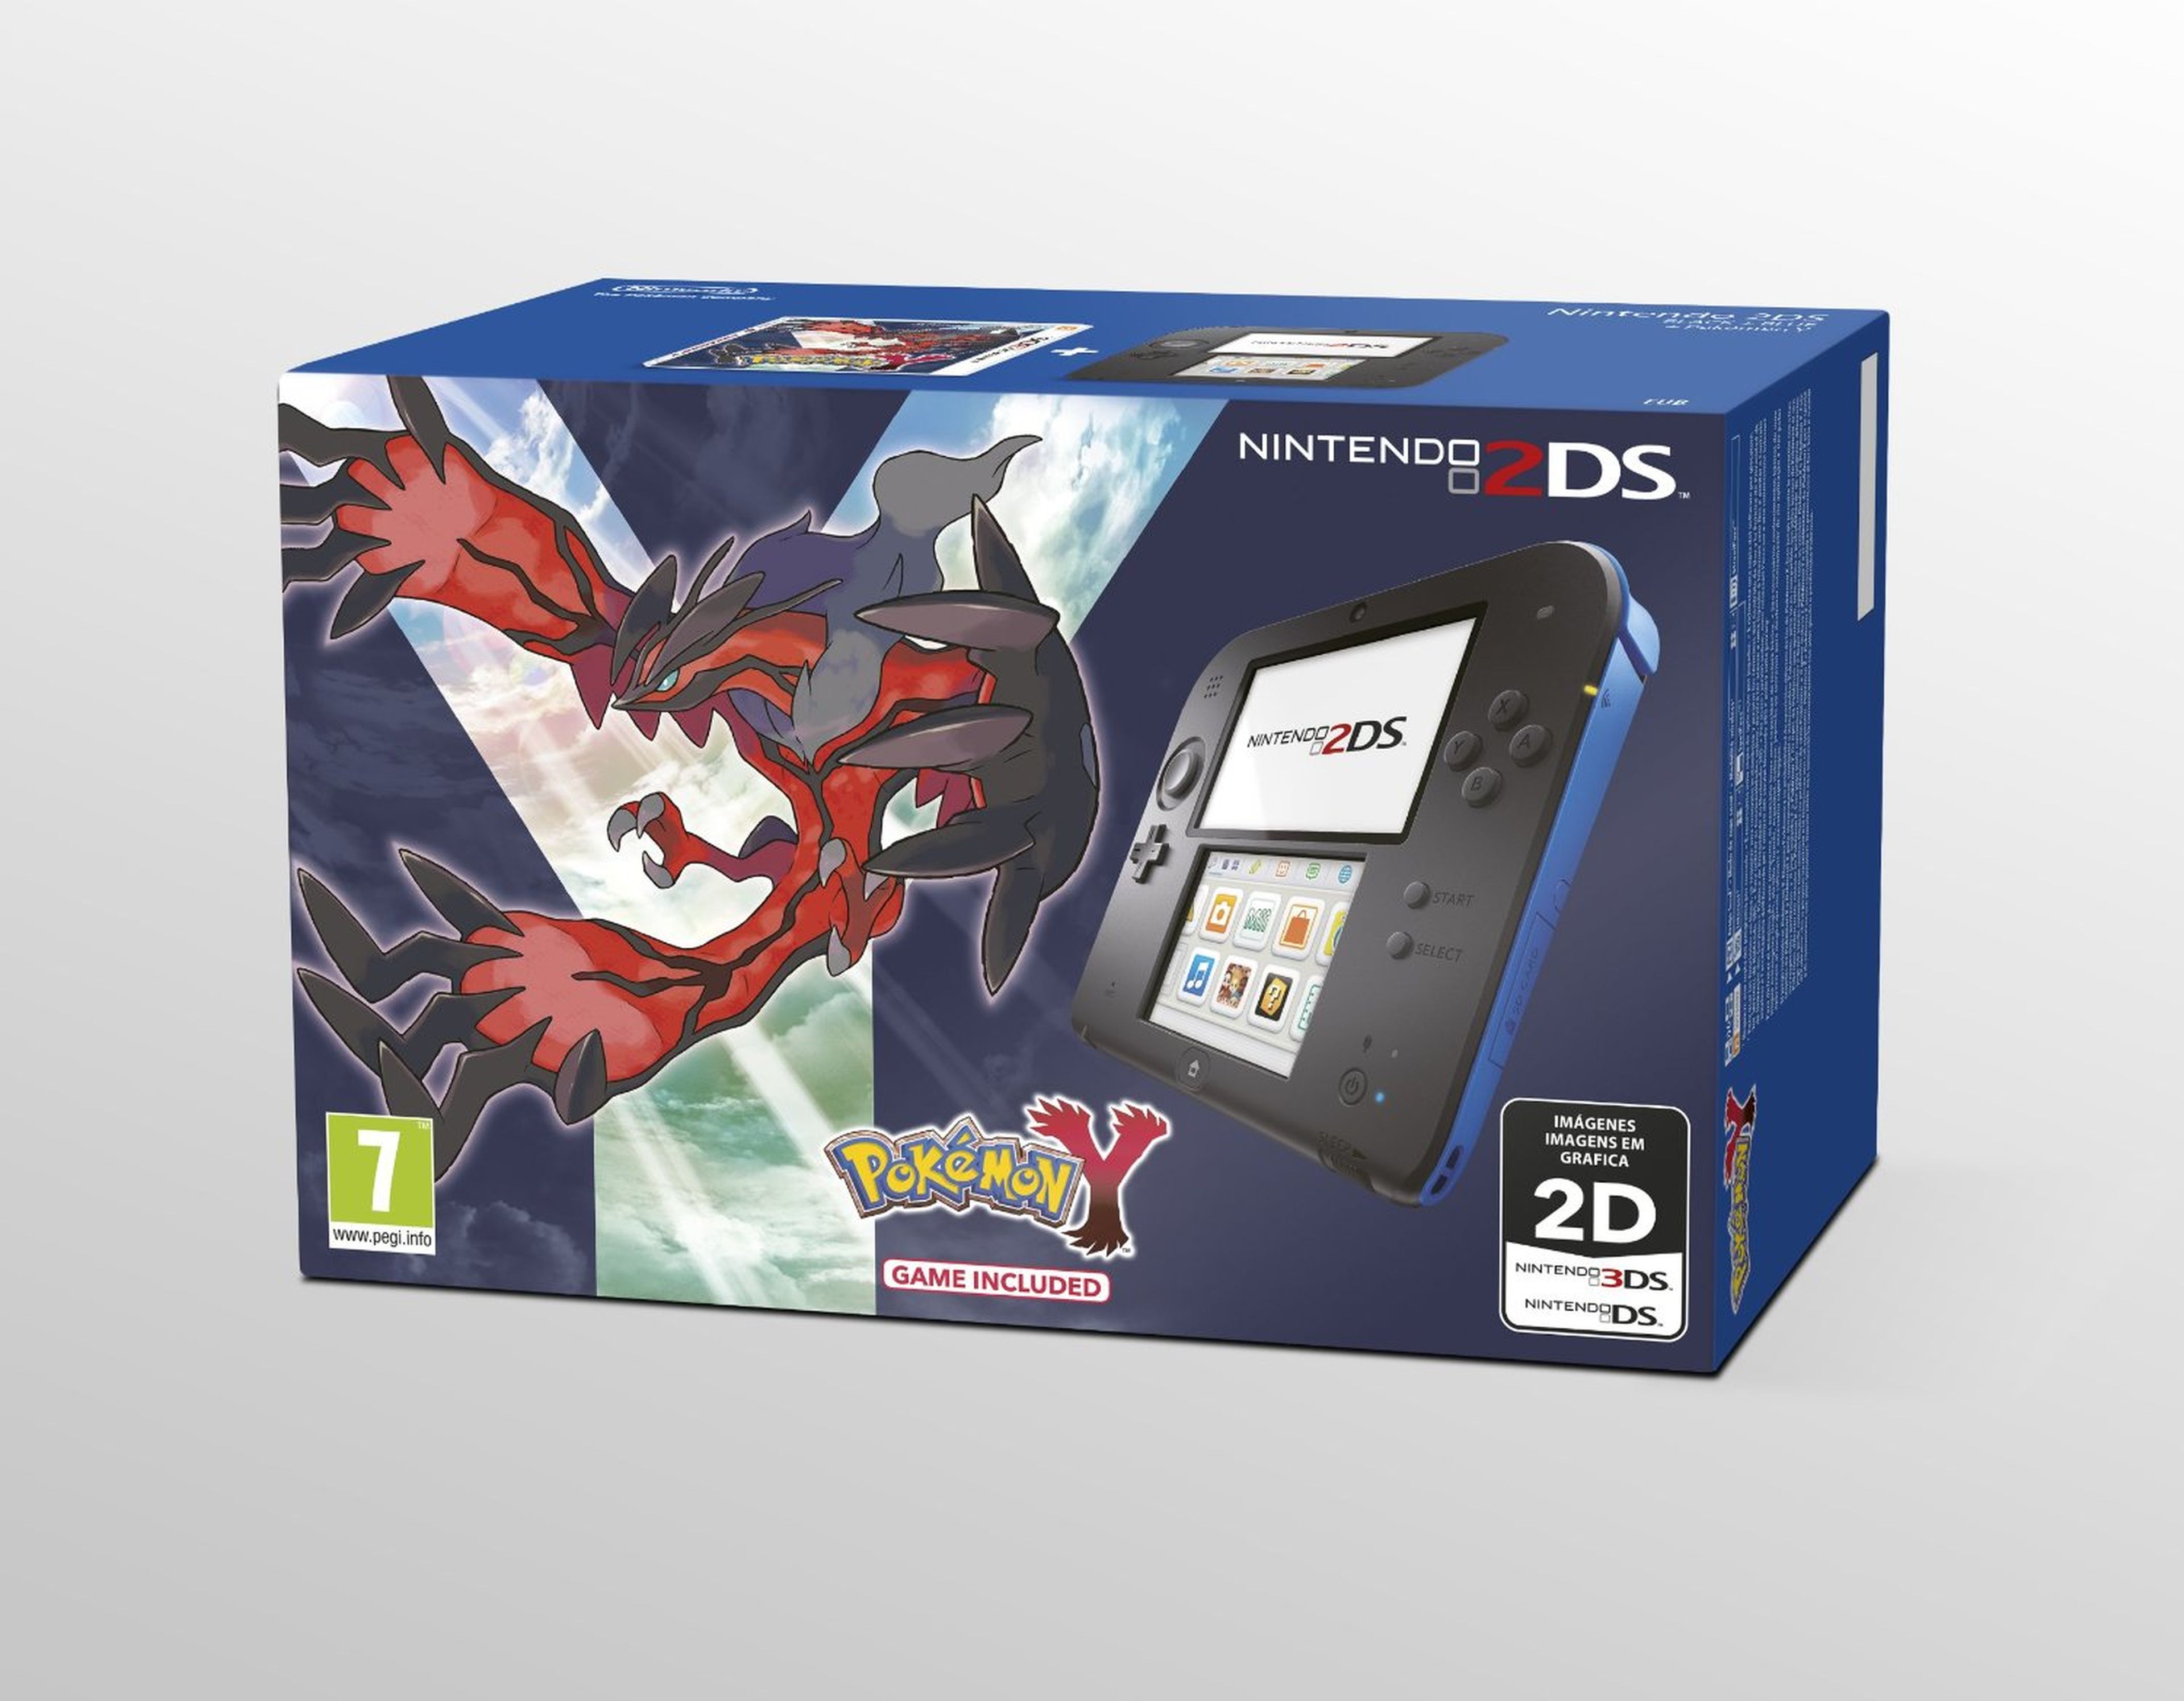 Packs de 2DS con Pokémon y Animal Crossing